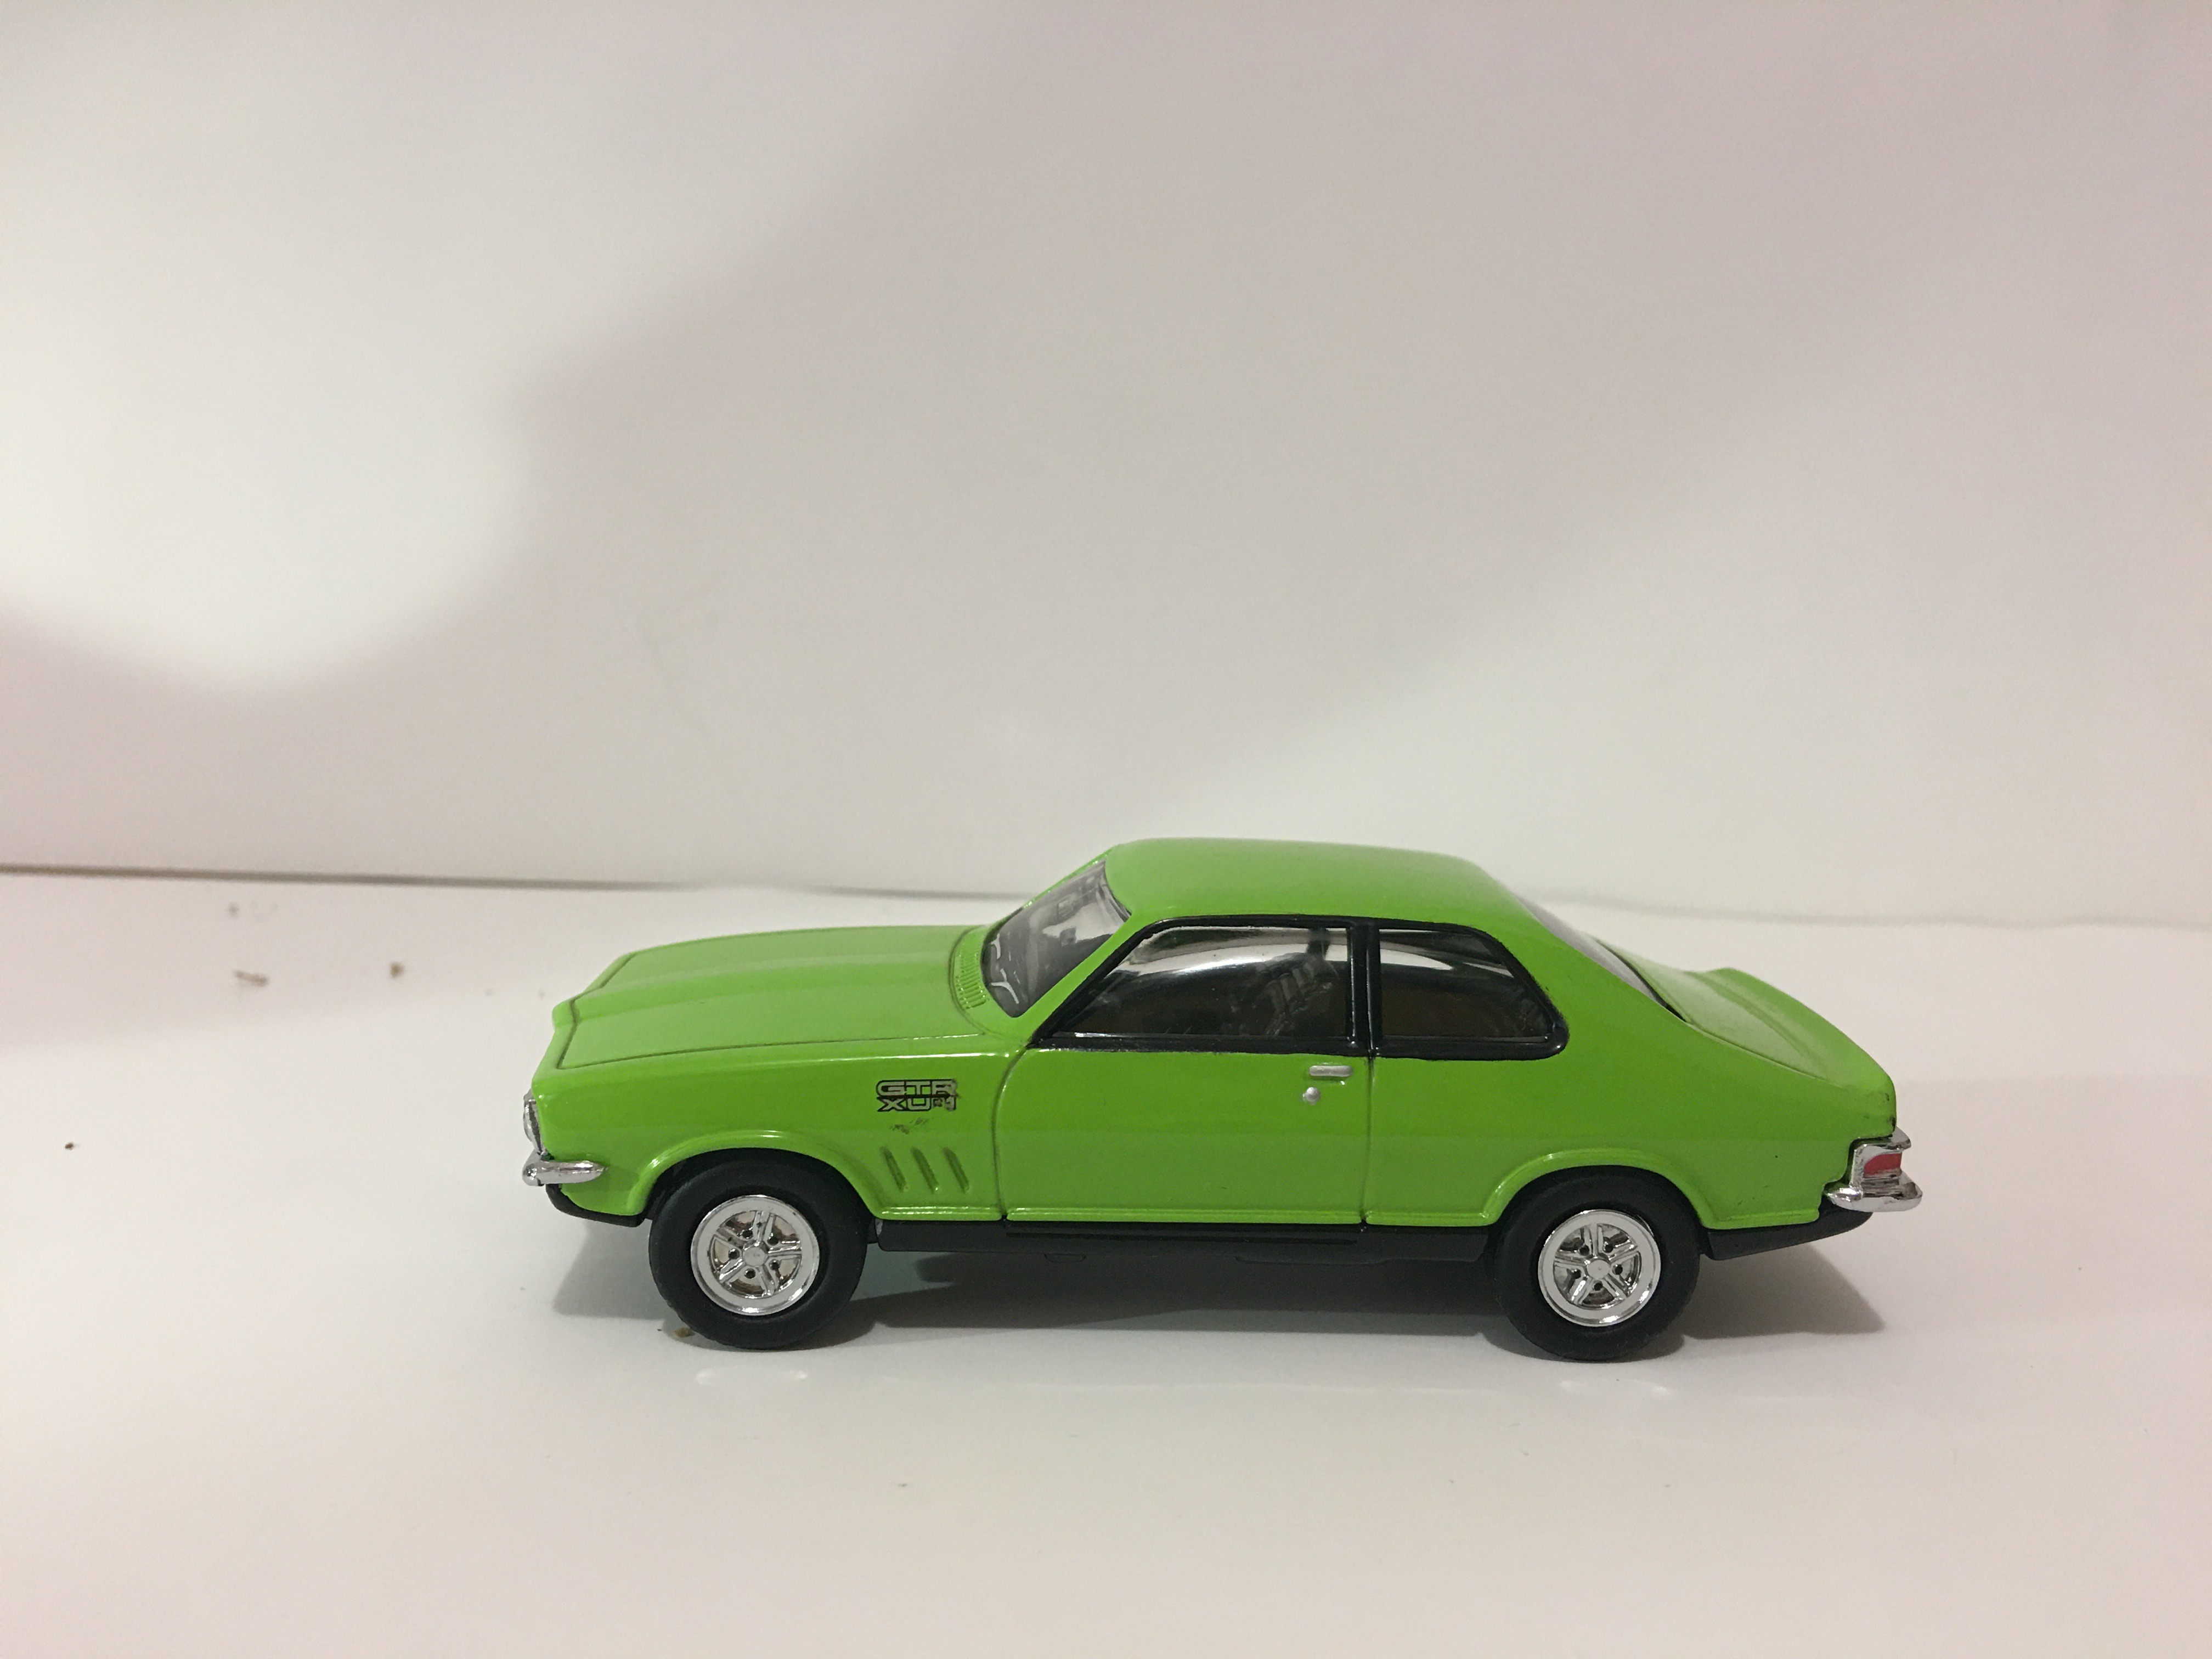 Torana GTR XU1 – Green